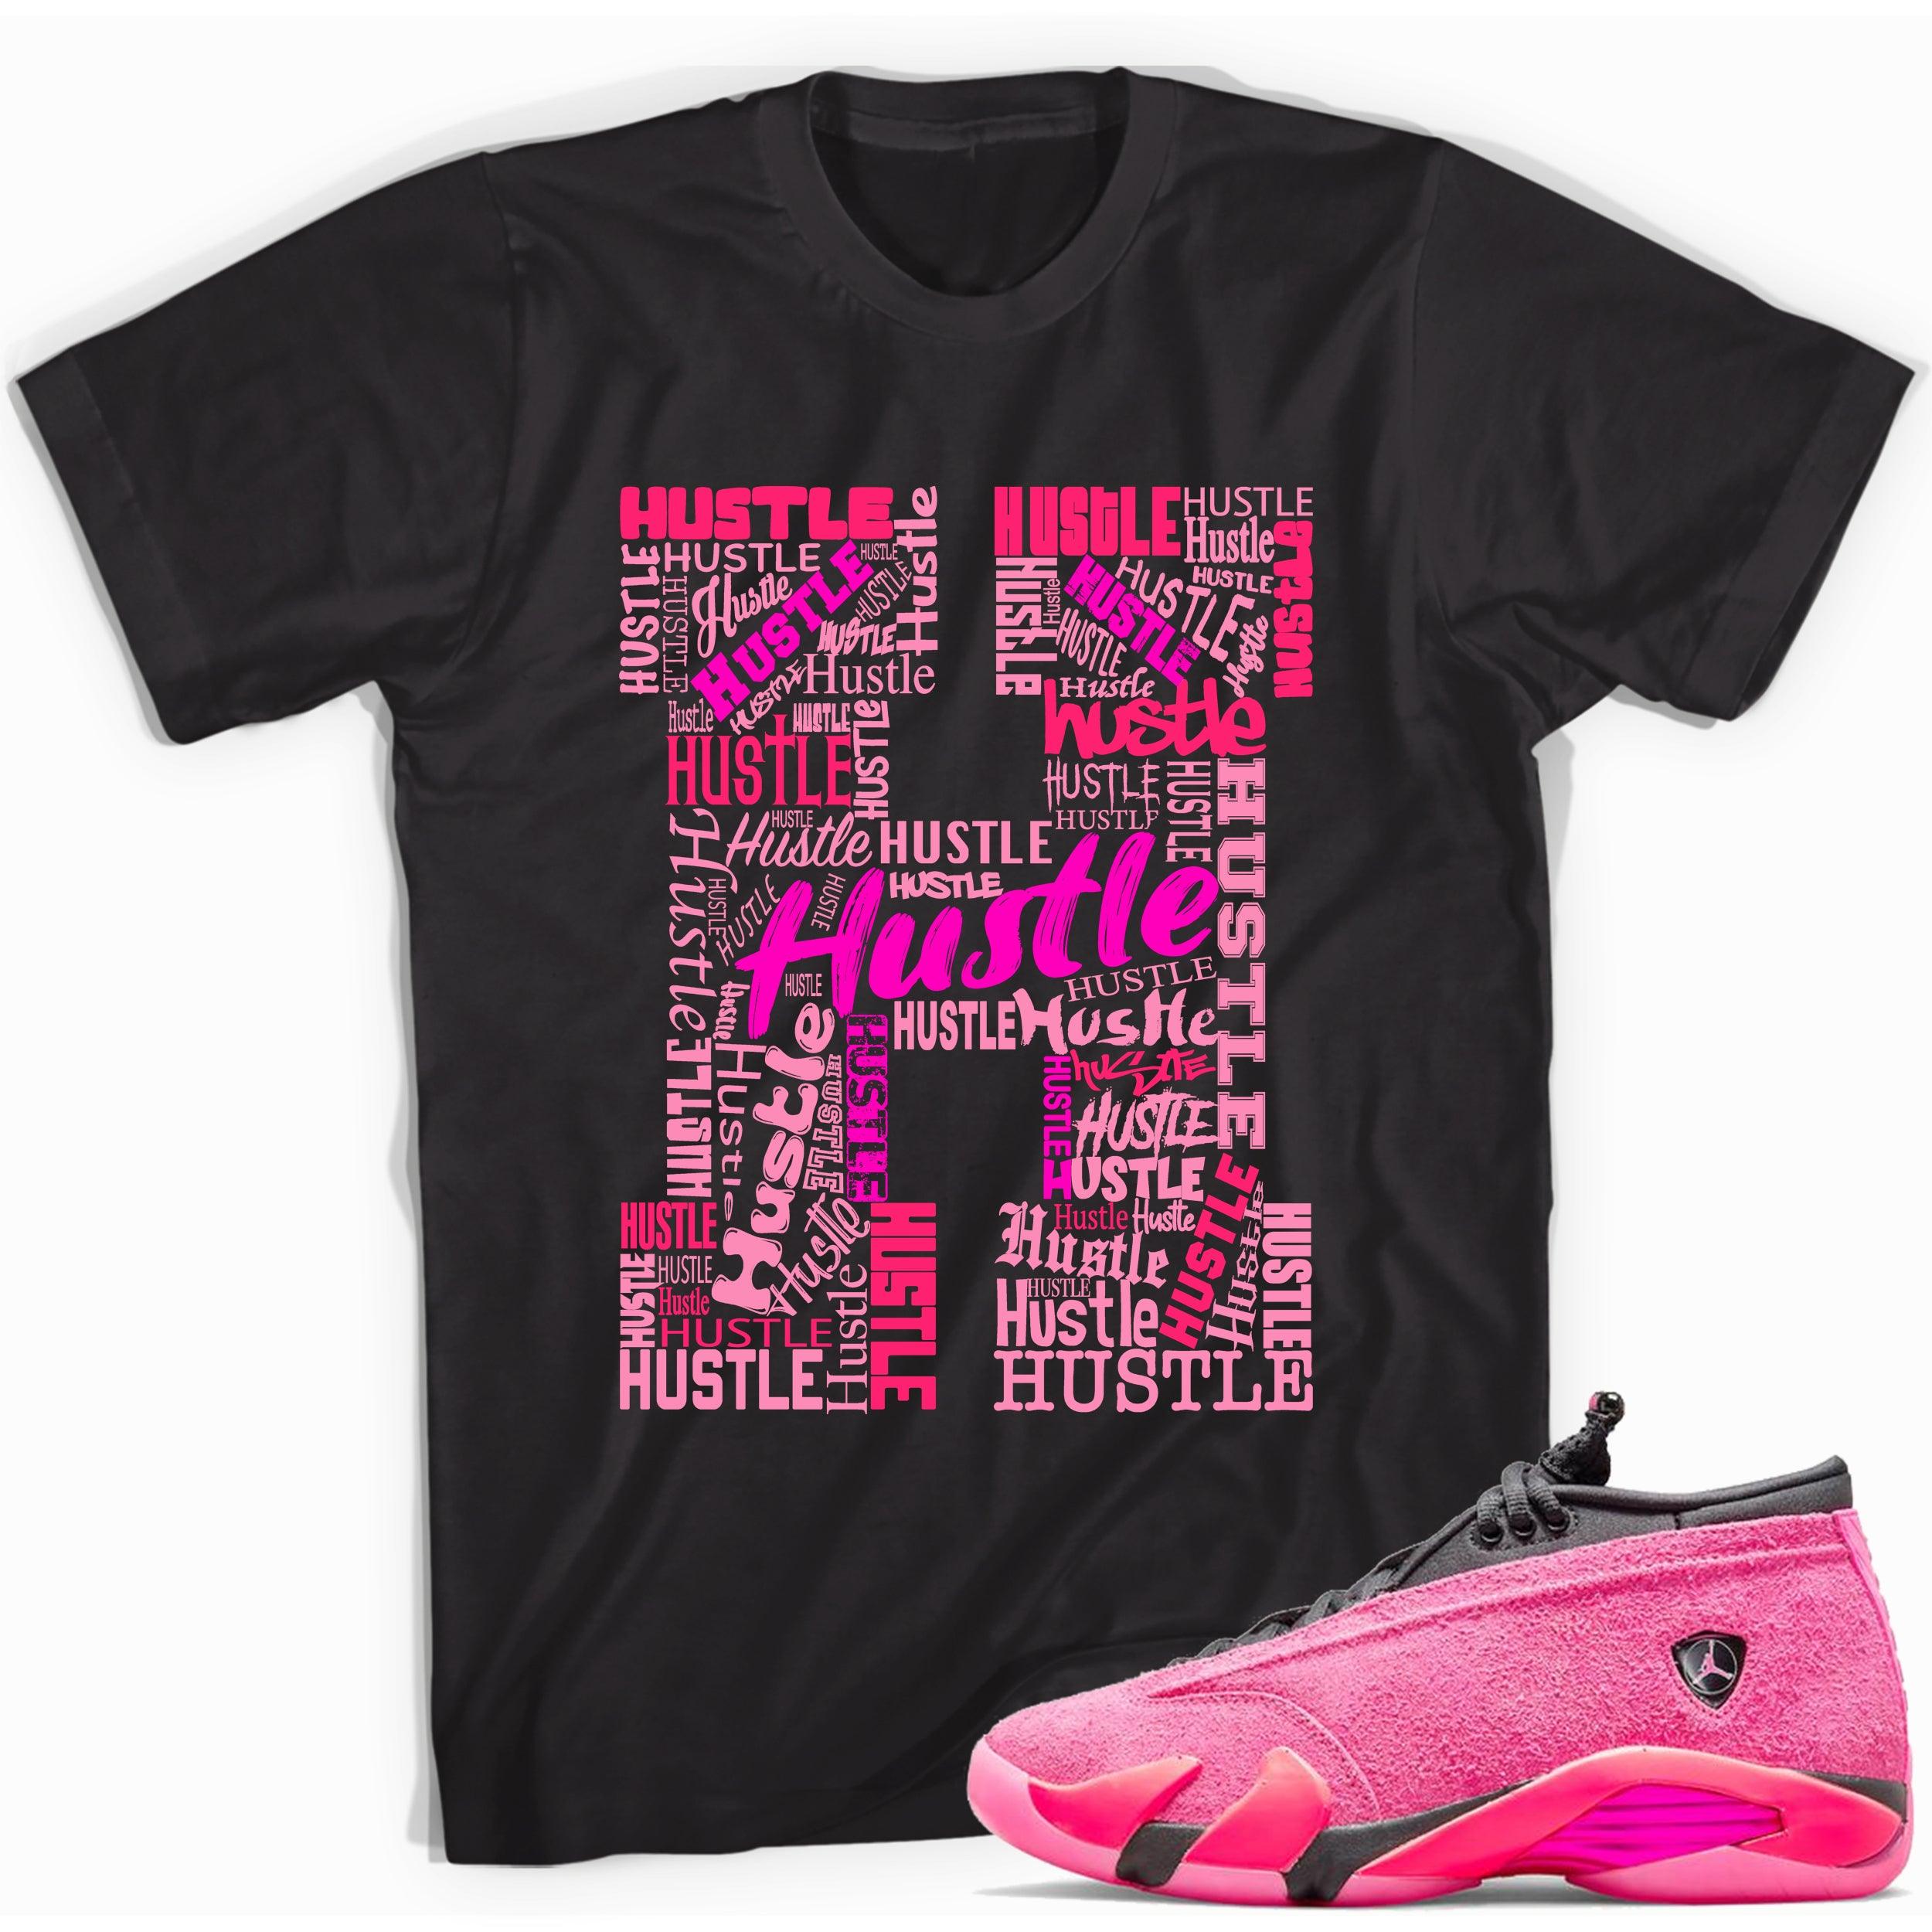 Black H For Hustle Shirt Jordan 14s Low Shocking Pink photo